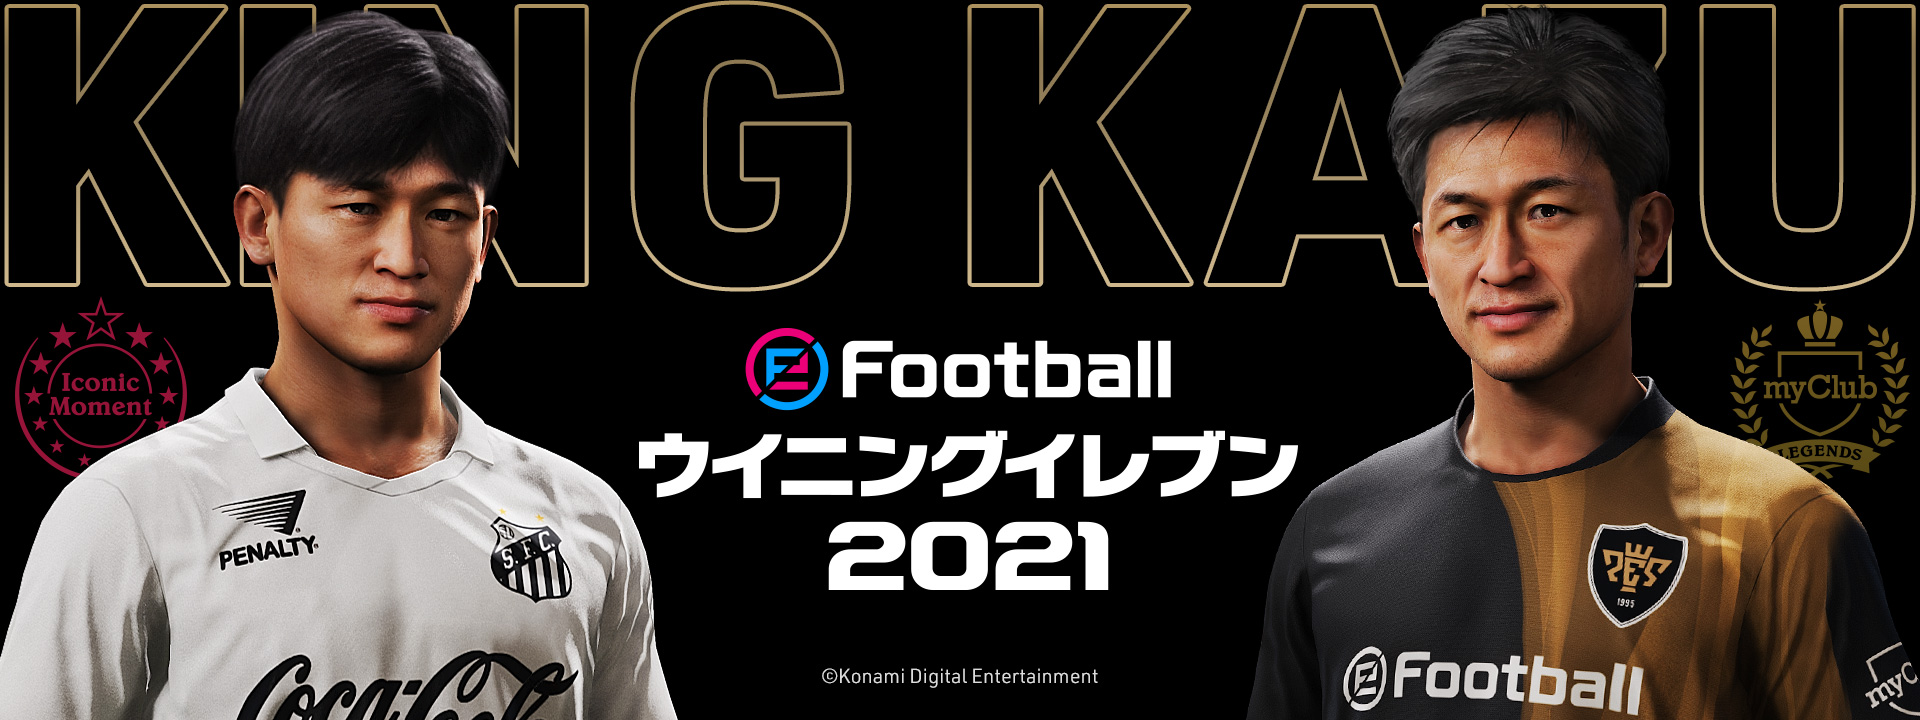 ウイニングイレブン シリーズが King Kazu こと三浦知良選手とのパートナーシップ契約を締結 株式会社コナミデジタルエンタテインメントのプレスリリース